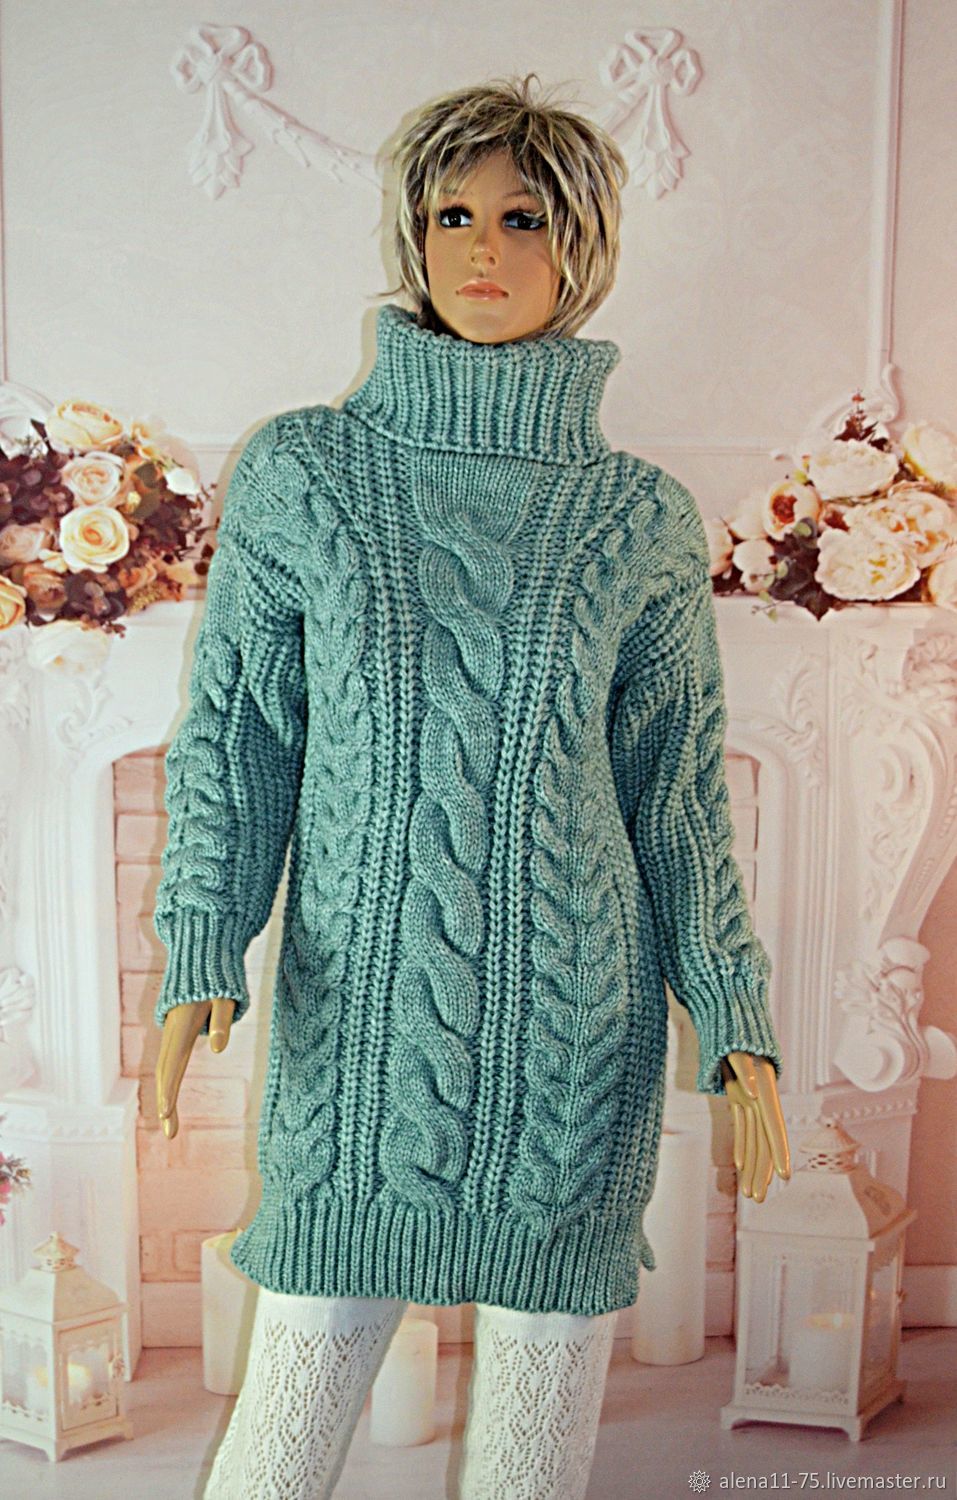 Женский свитер купить в интернет магазине Gepur